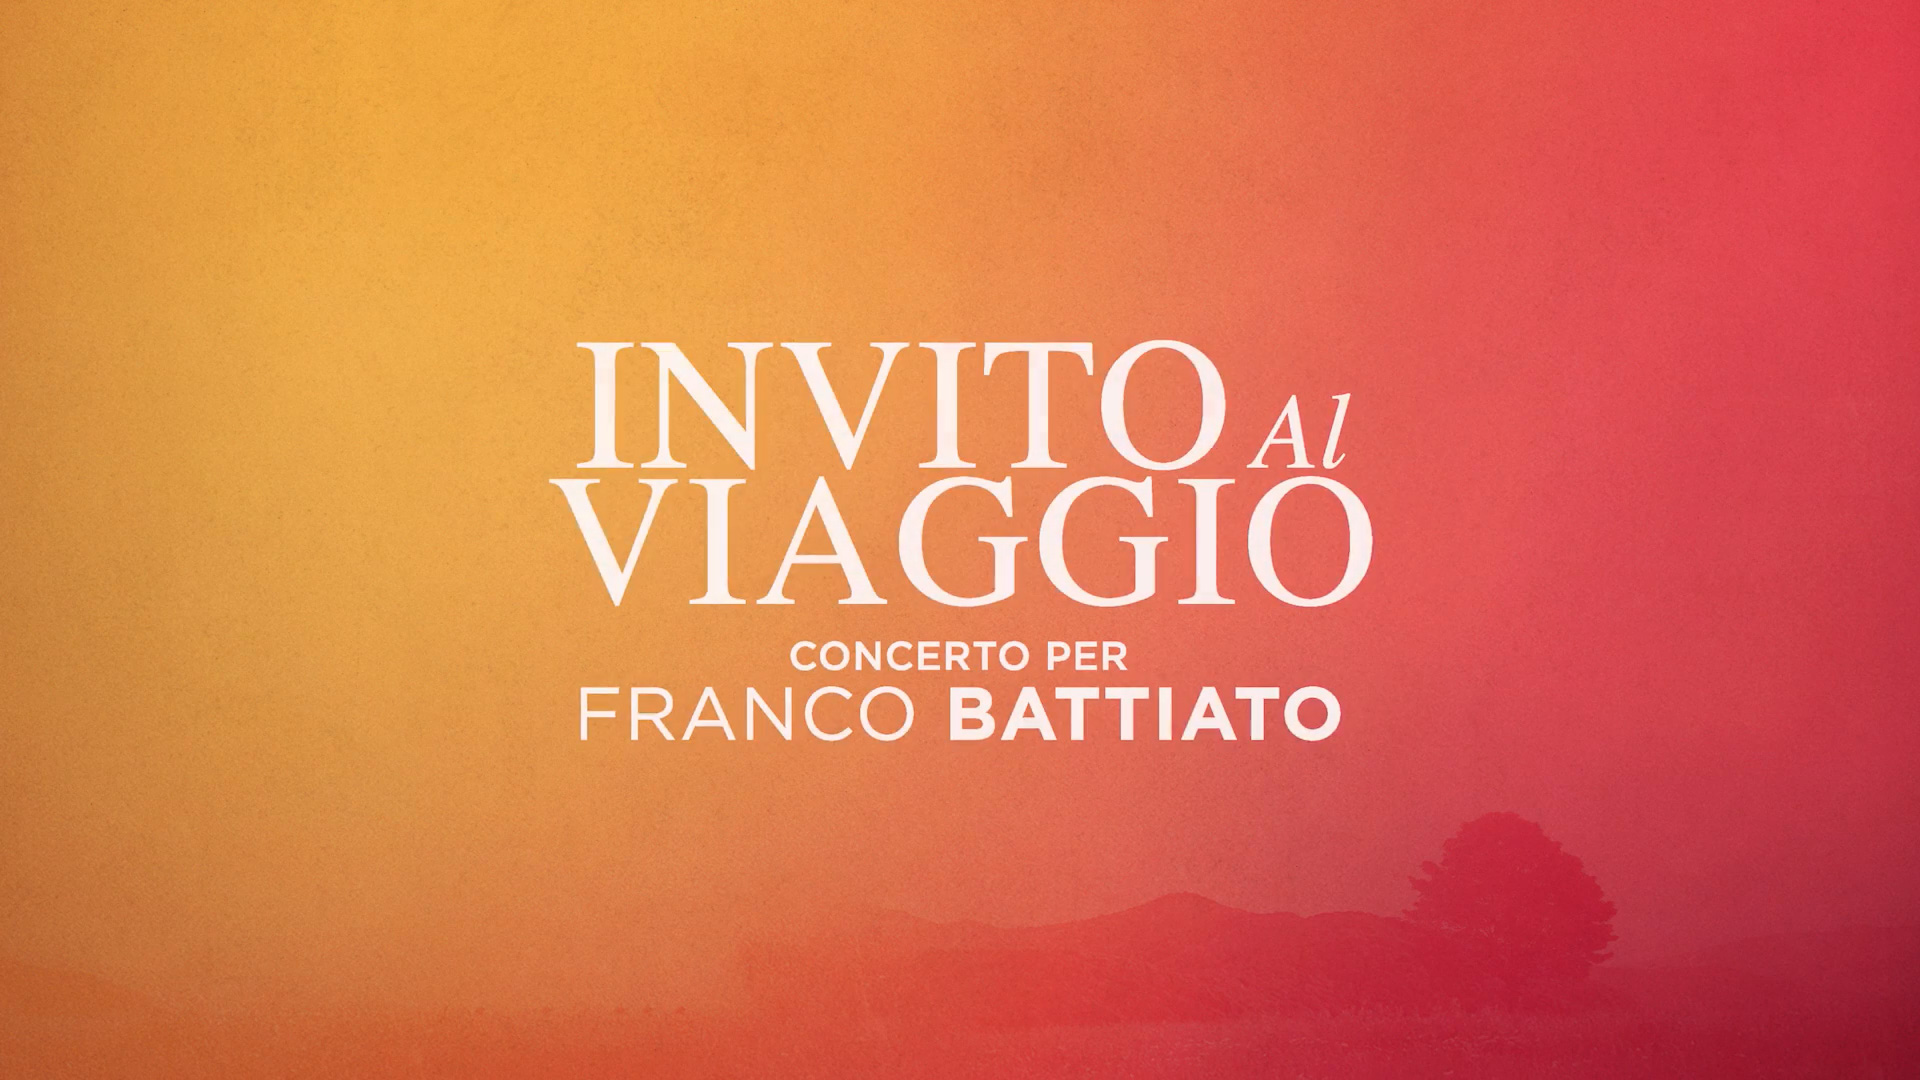 Trailer Invito al viaggio concerto per Franco Battiato